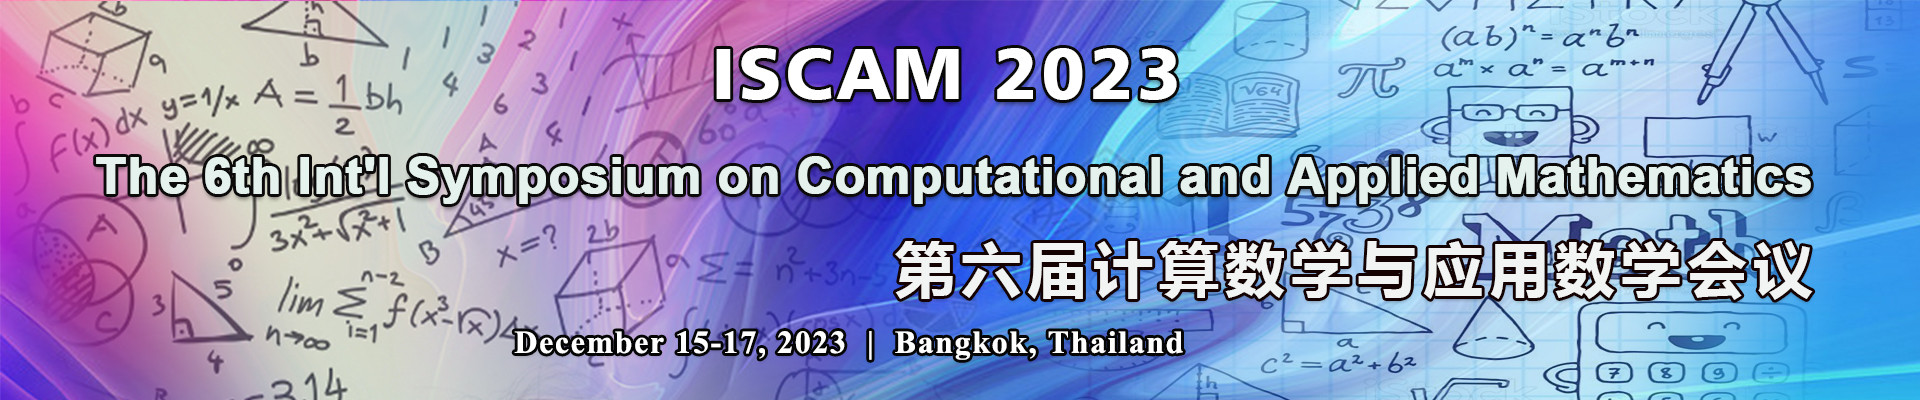 第六届计算数学与应用数学会议(ISCAM 2023)